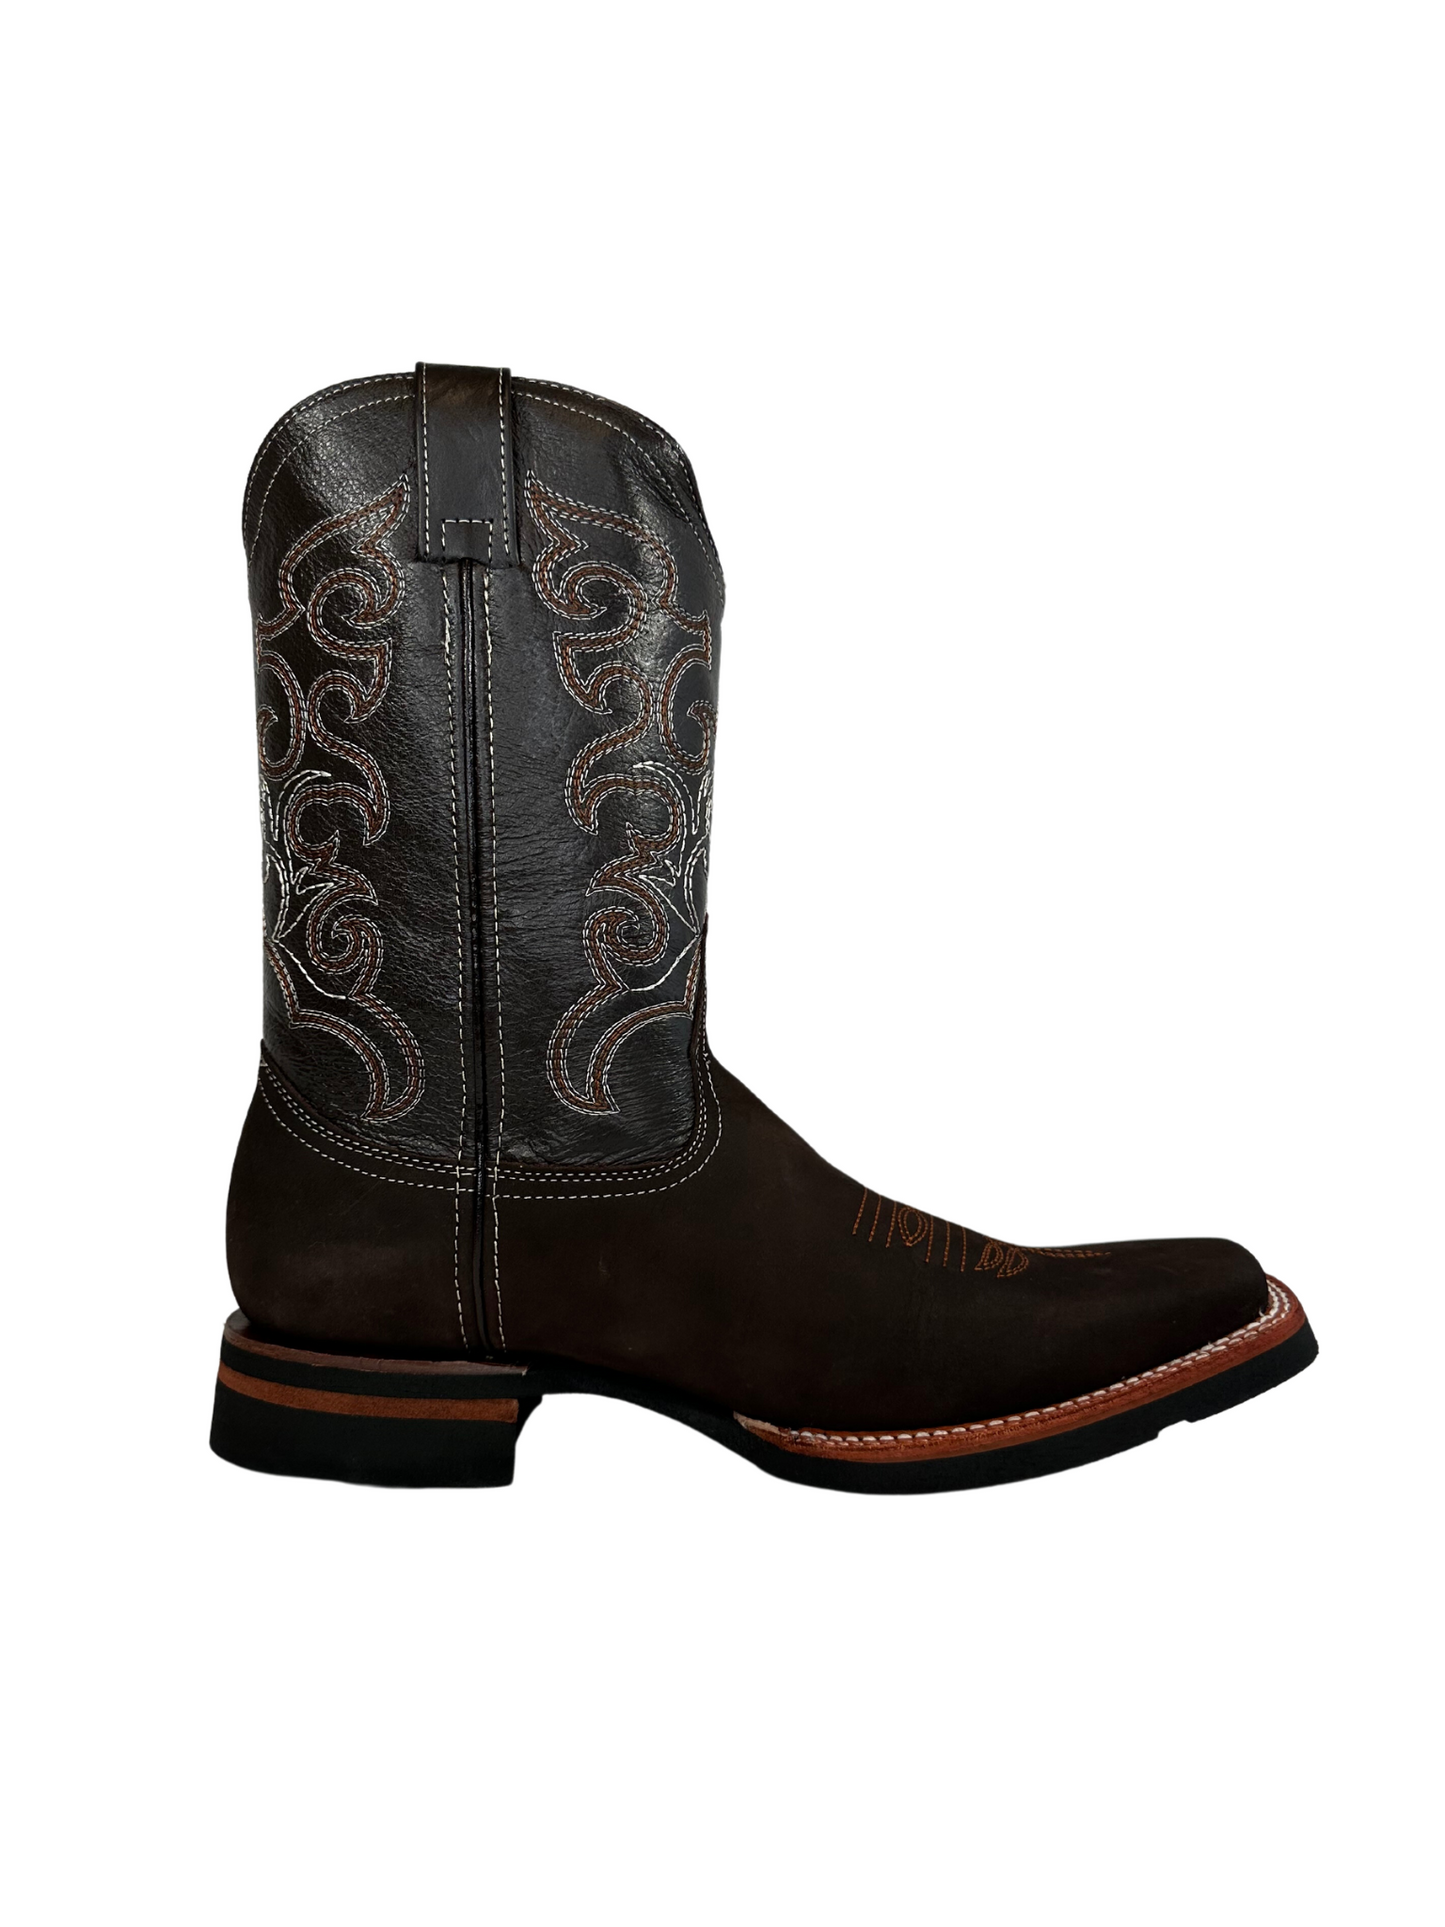 La Sierra Men's Brown Nobuck Rodeo Toe Boot